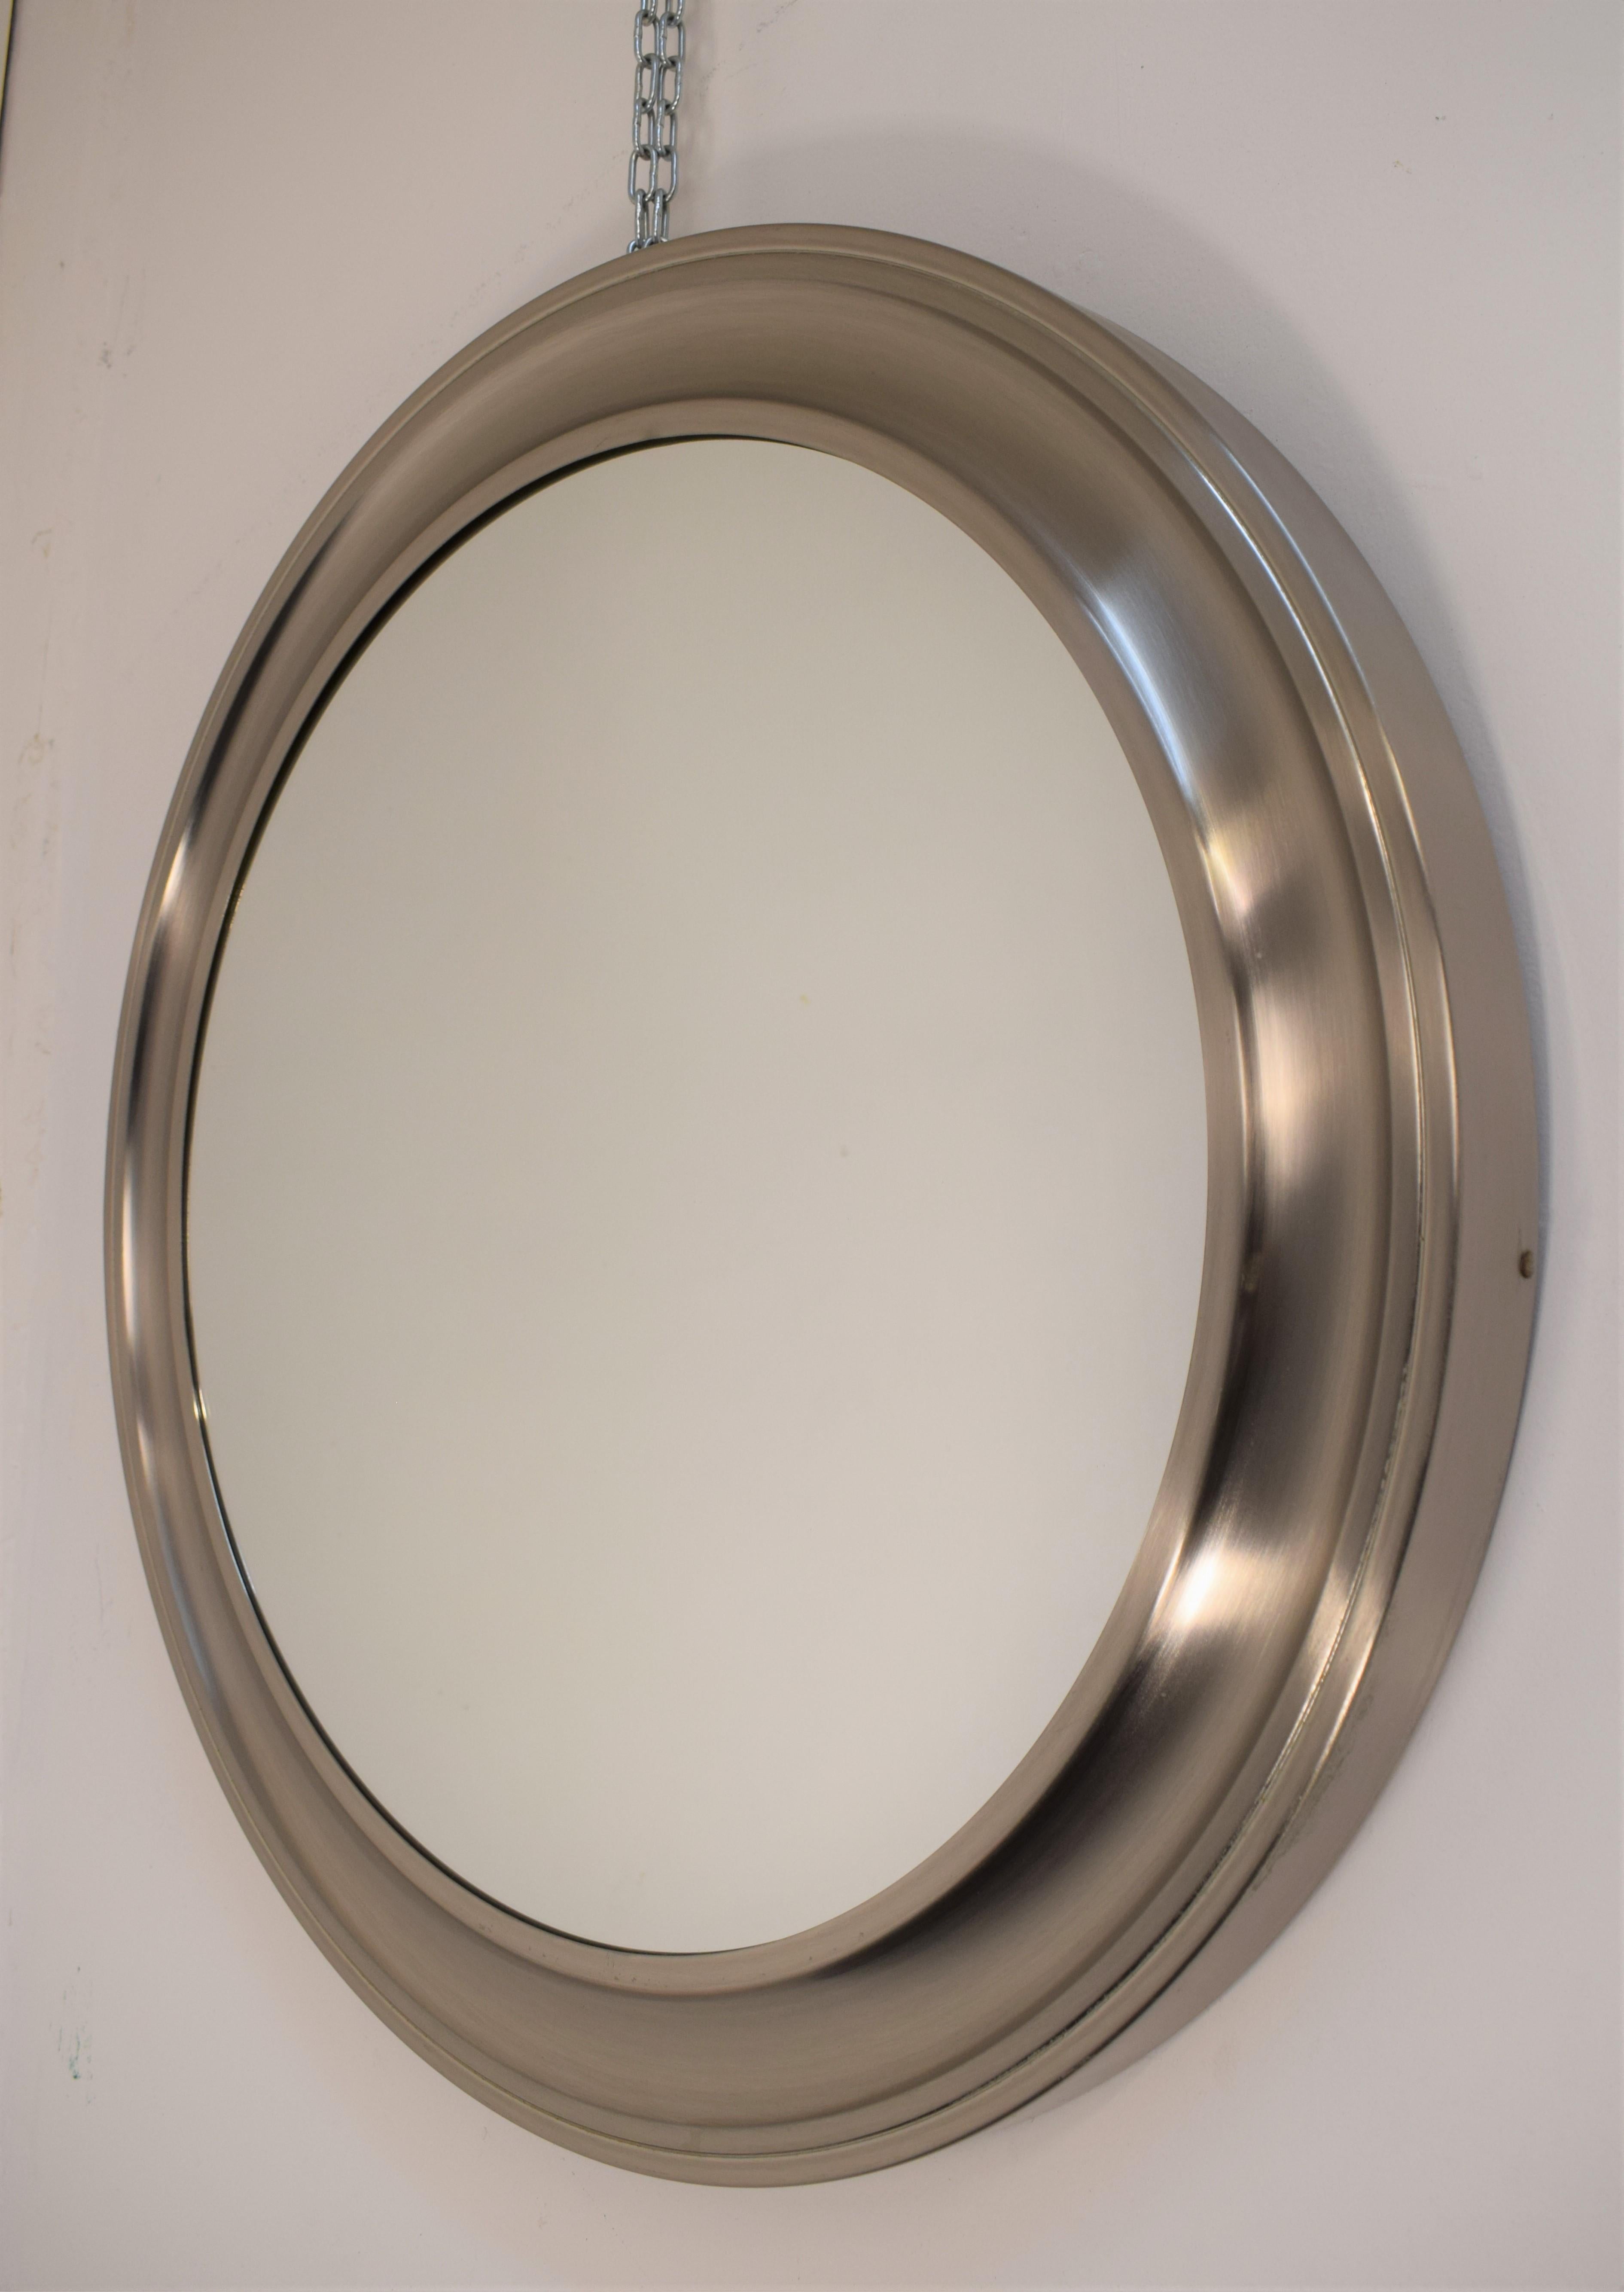 Italian wall mirror, Sergio Mazza style, 1970s.

Dimensions: D= 62 cm; Depth = 4 cm.